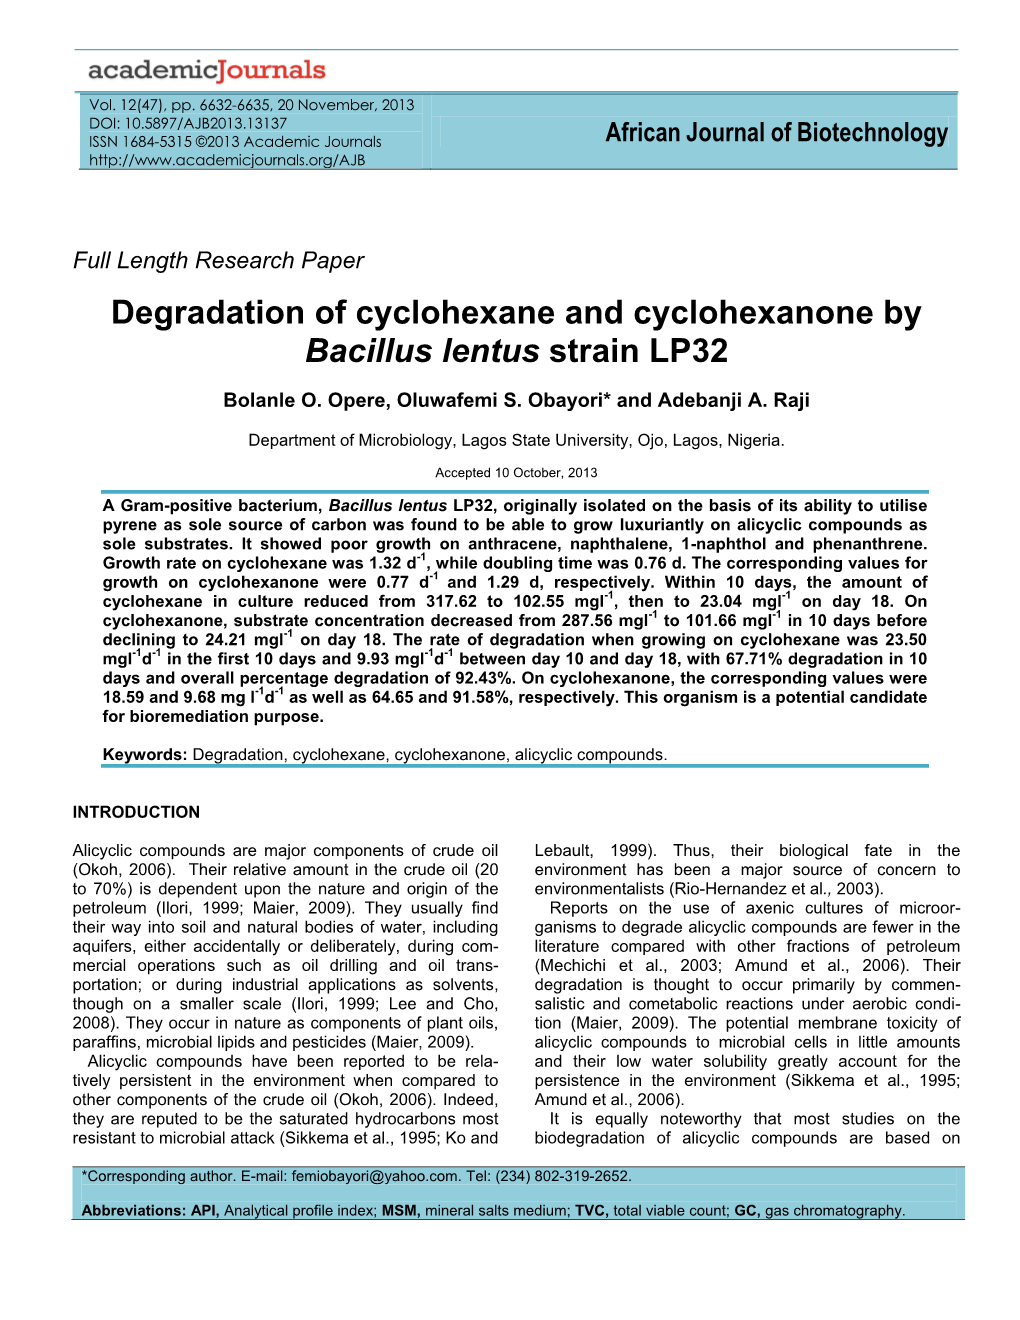 Degradation of Cyclohexane and Cyclohexanone by Bacillus Lentus Strain LP32